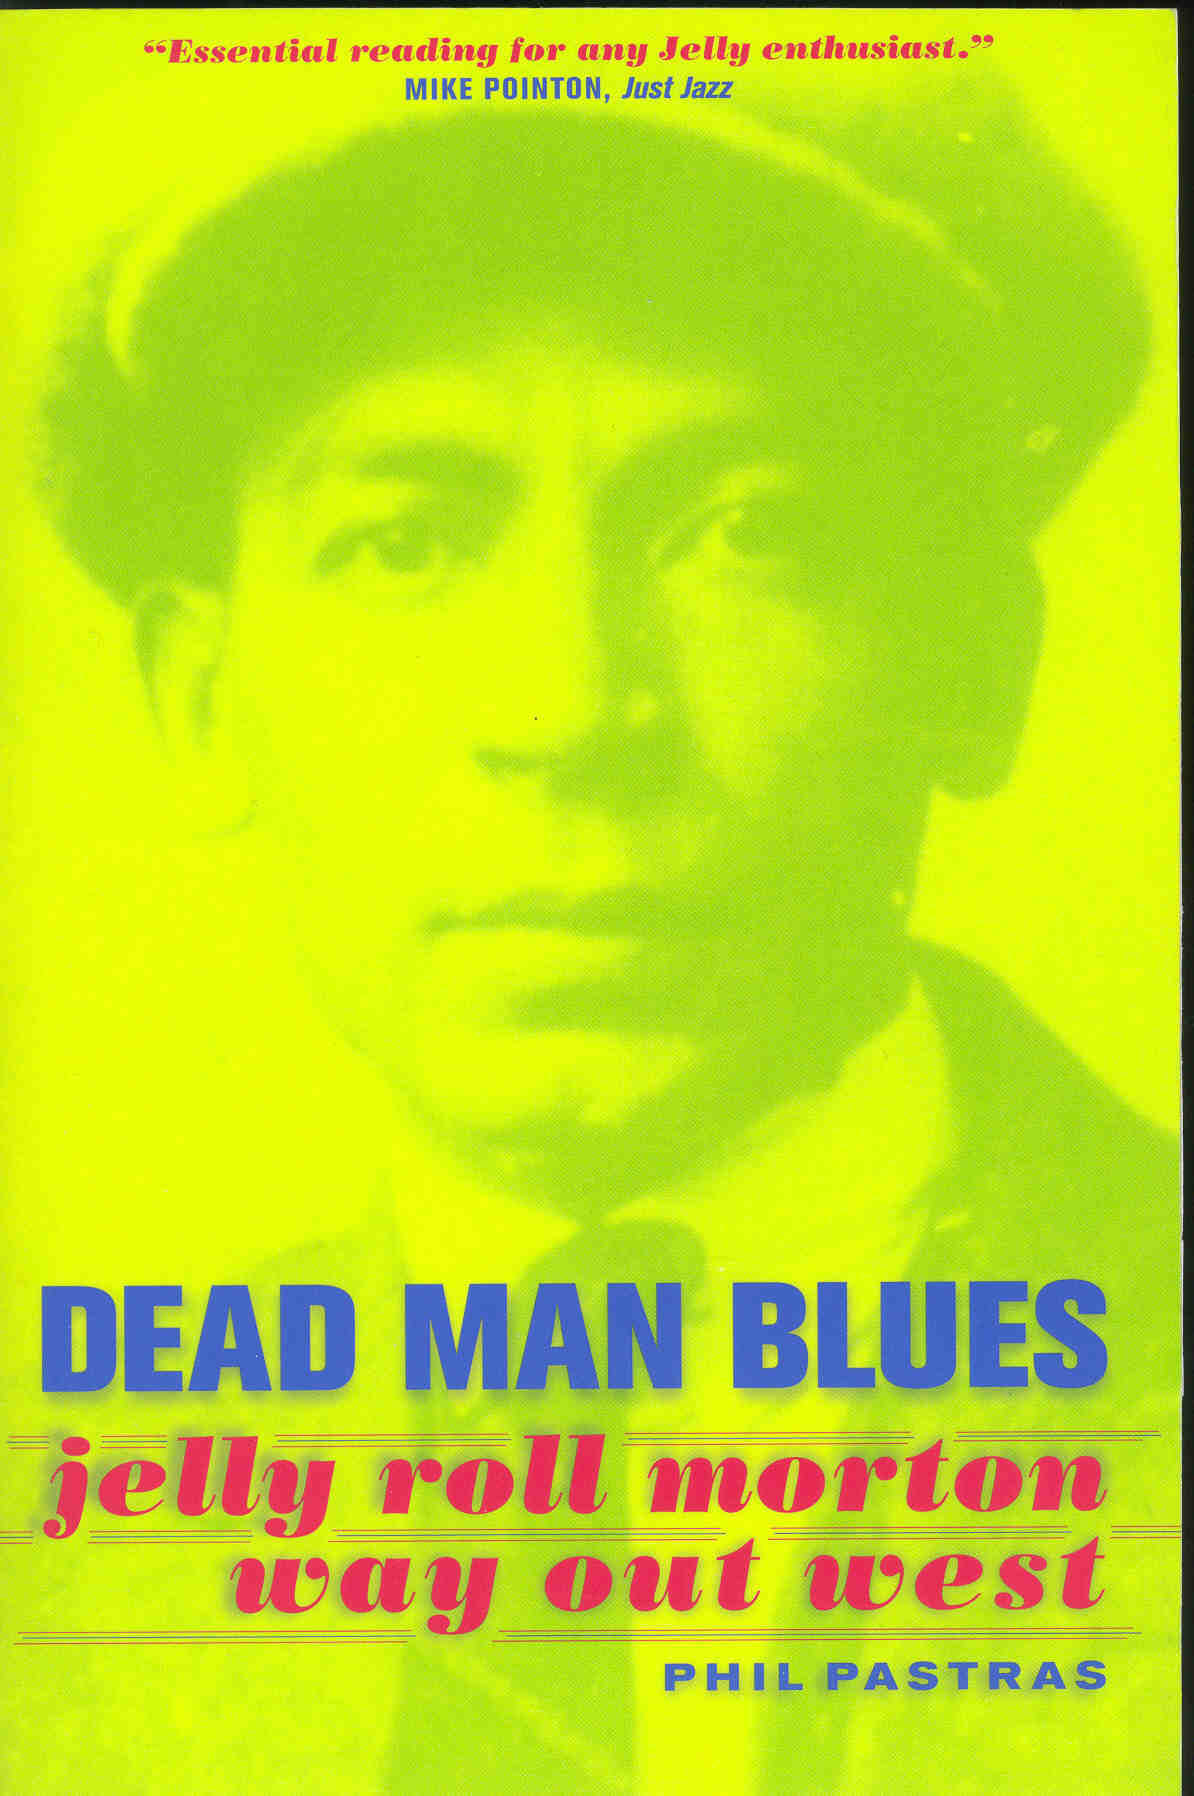 Image Dead Man Blues